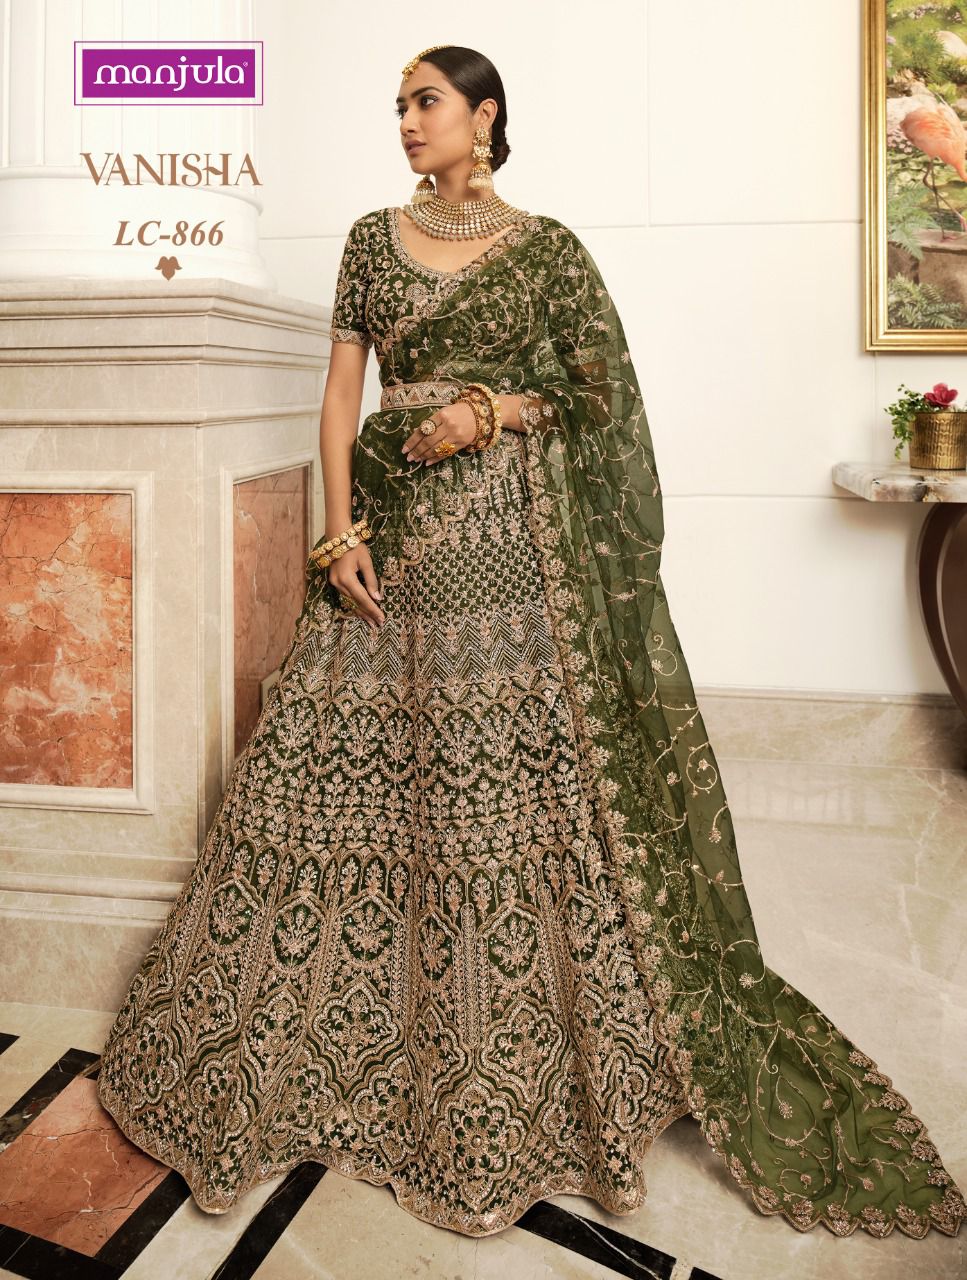 Manjula Fashion Vanisha LC-866